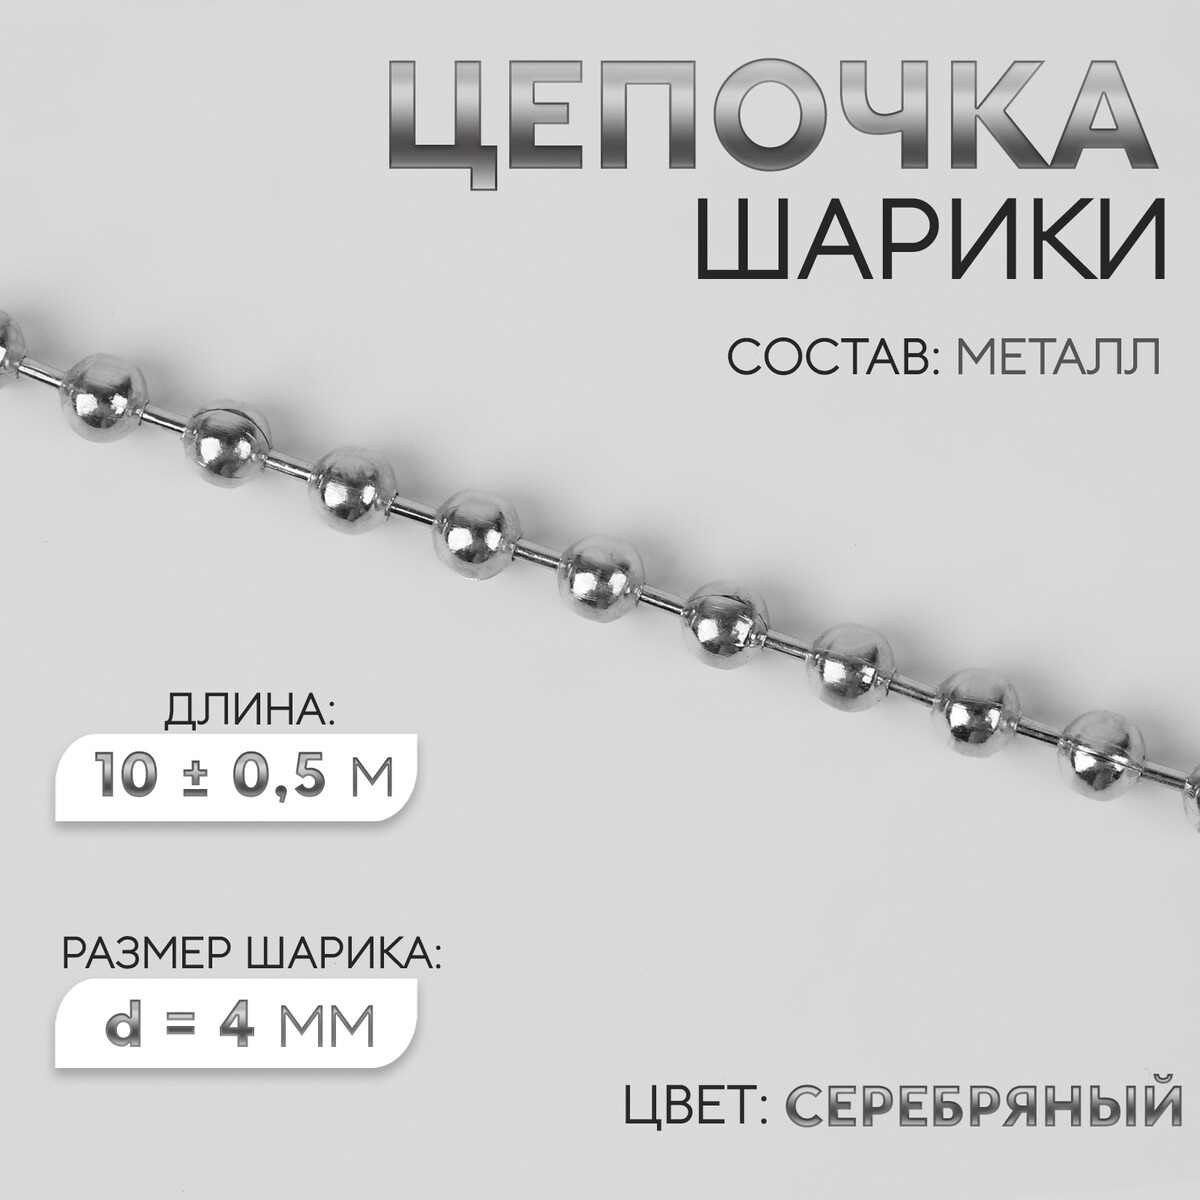 Цепочка для сумки, железная, d = 4 мм, 10 ± 0,5 м, цвет серебряный